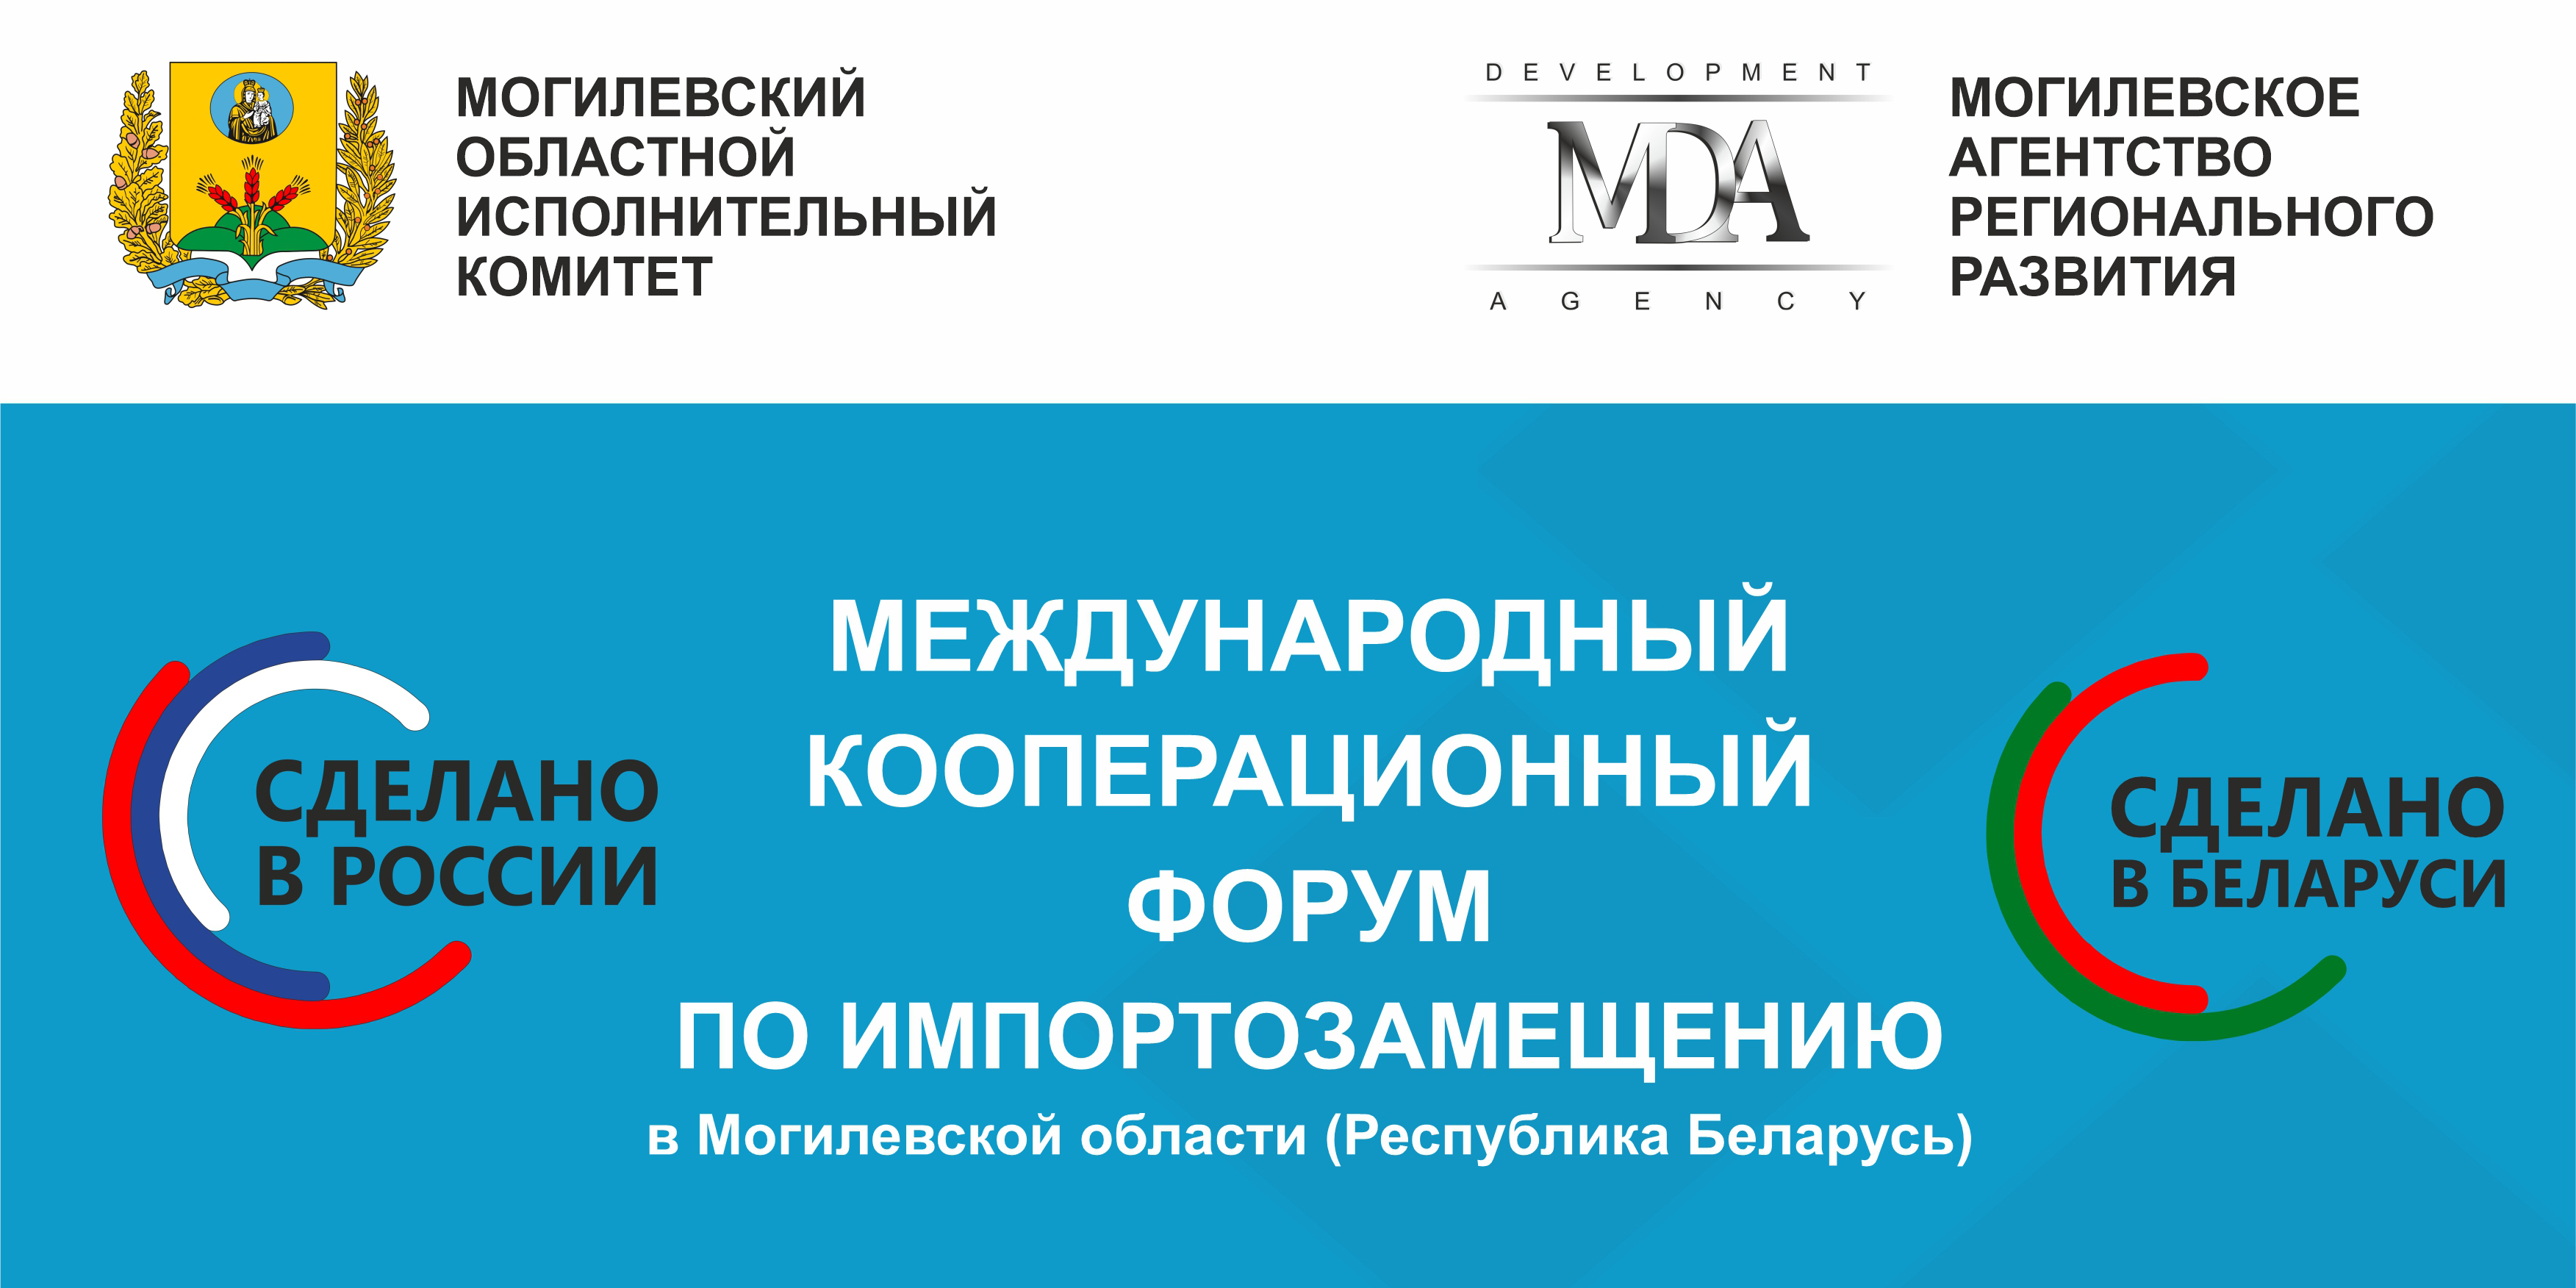 Международный кооперационный форум по импортозамещению пройдет в Могилеве 25-27 октября 